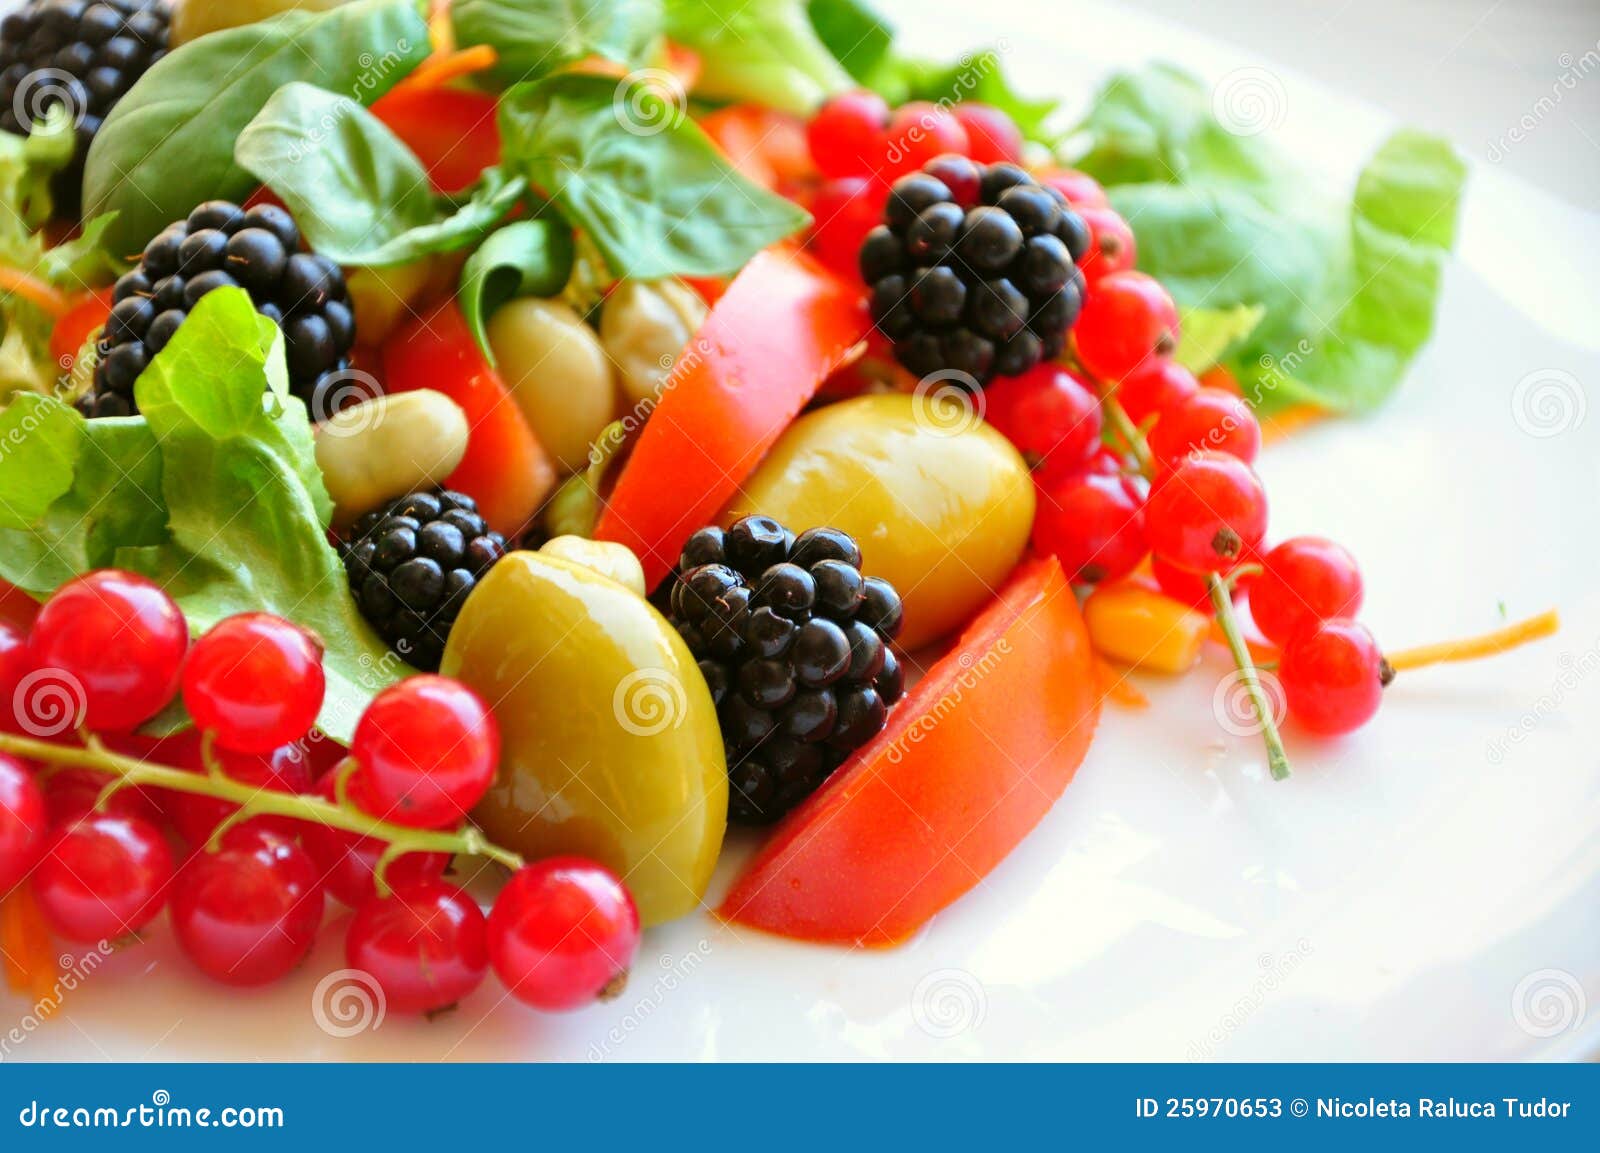 Zaklampen impuls Elektronisch Salade Met Fruit En Groenten Stock Afbeelding - Image of gezondheid,  sappig: 25970653